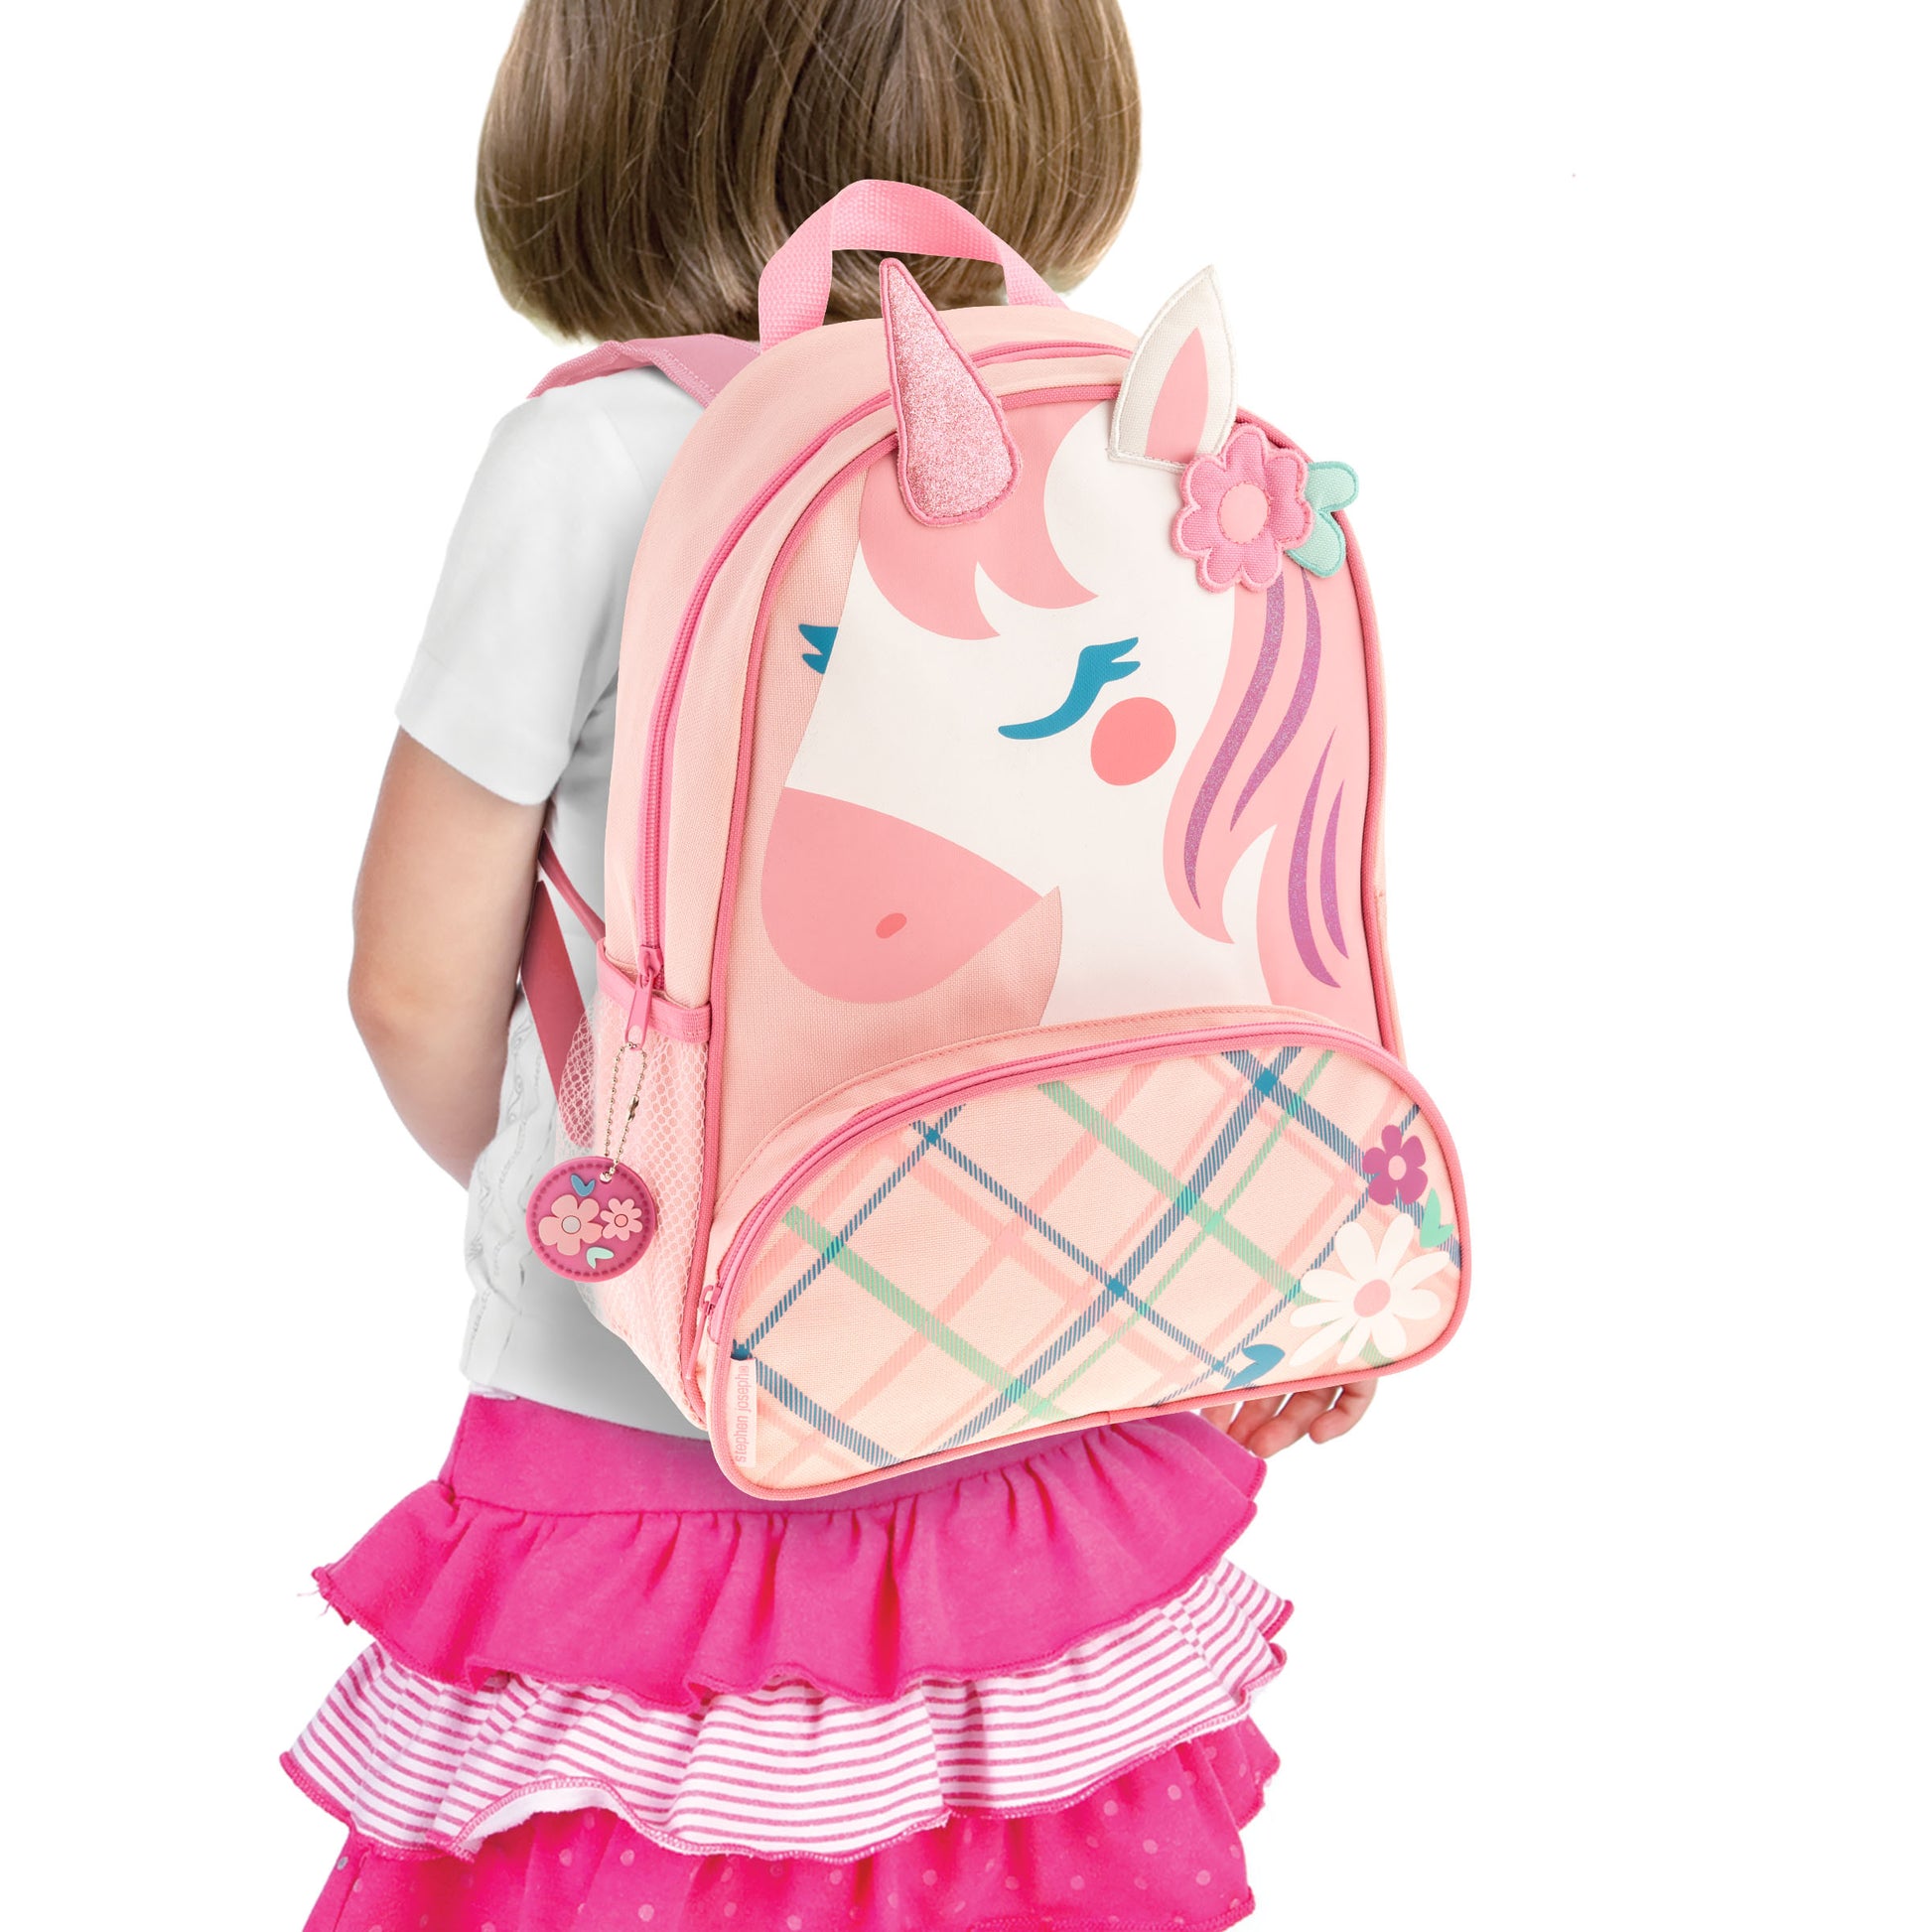 Unicorn Sidekick Backpack with Personalization